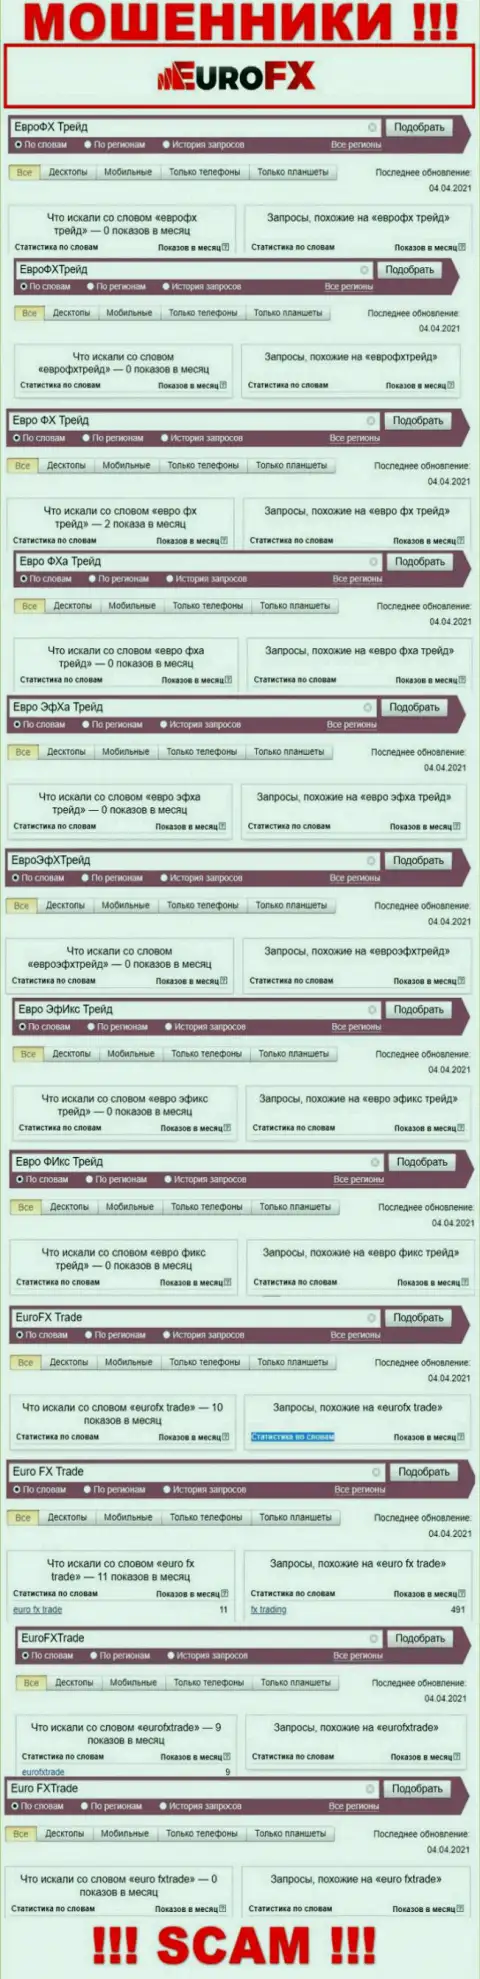 Скриншот результатов онлайн запросов по преступно действующей компании Евро ЭфИкс Трейд